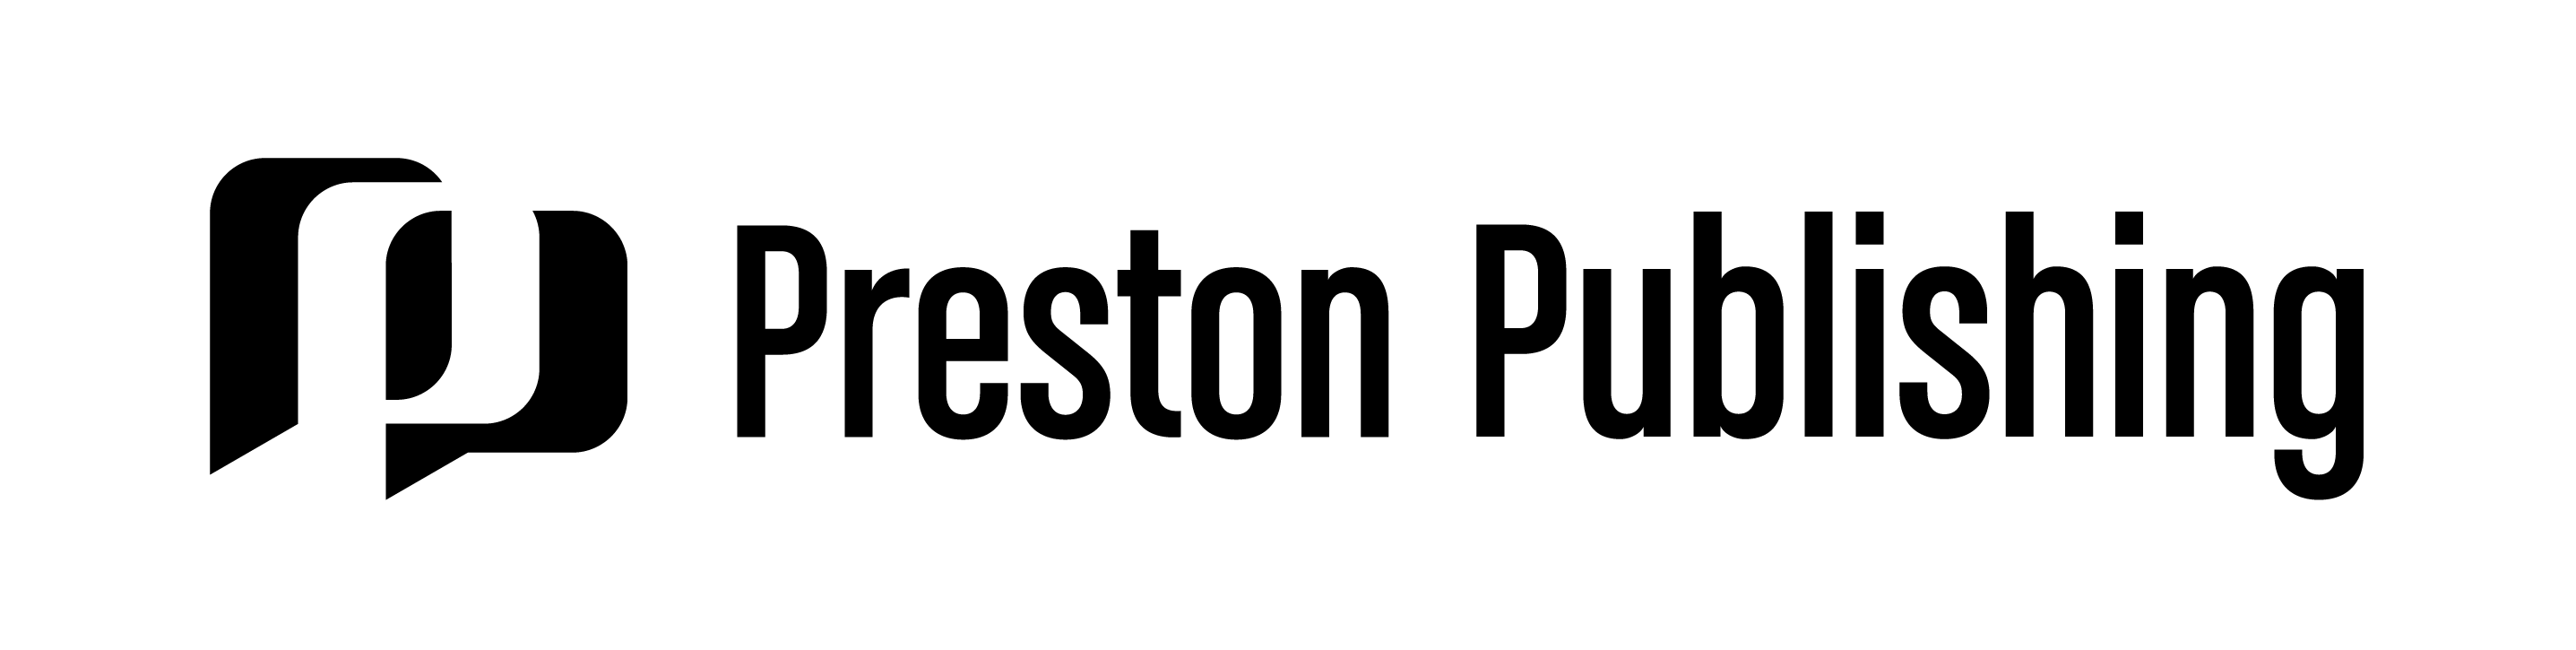 preston_publishing